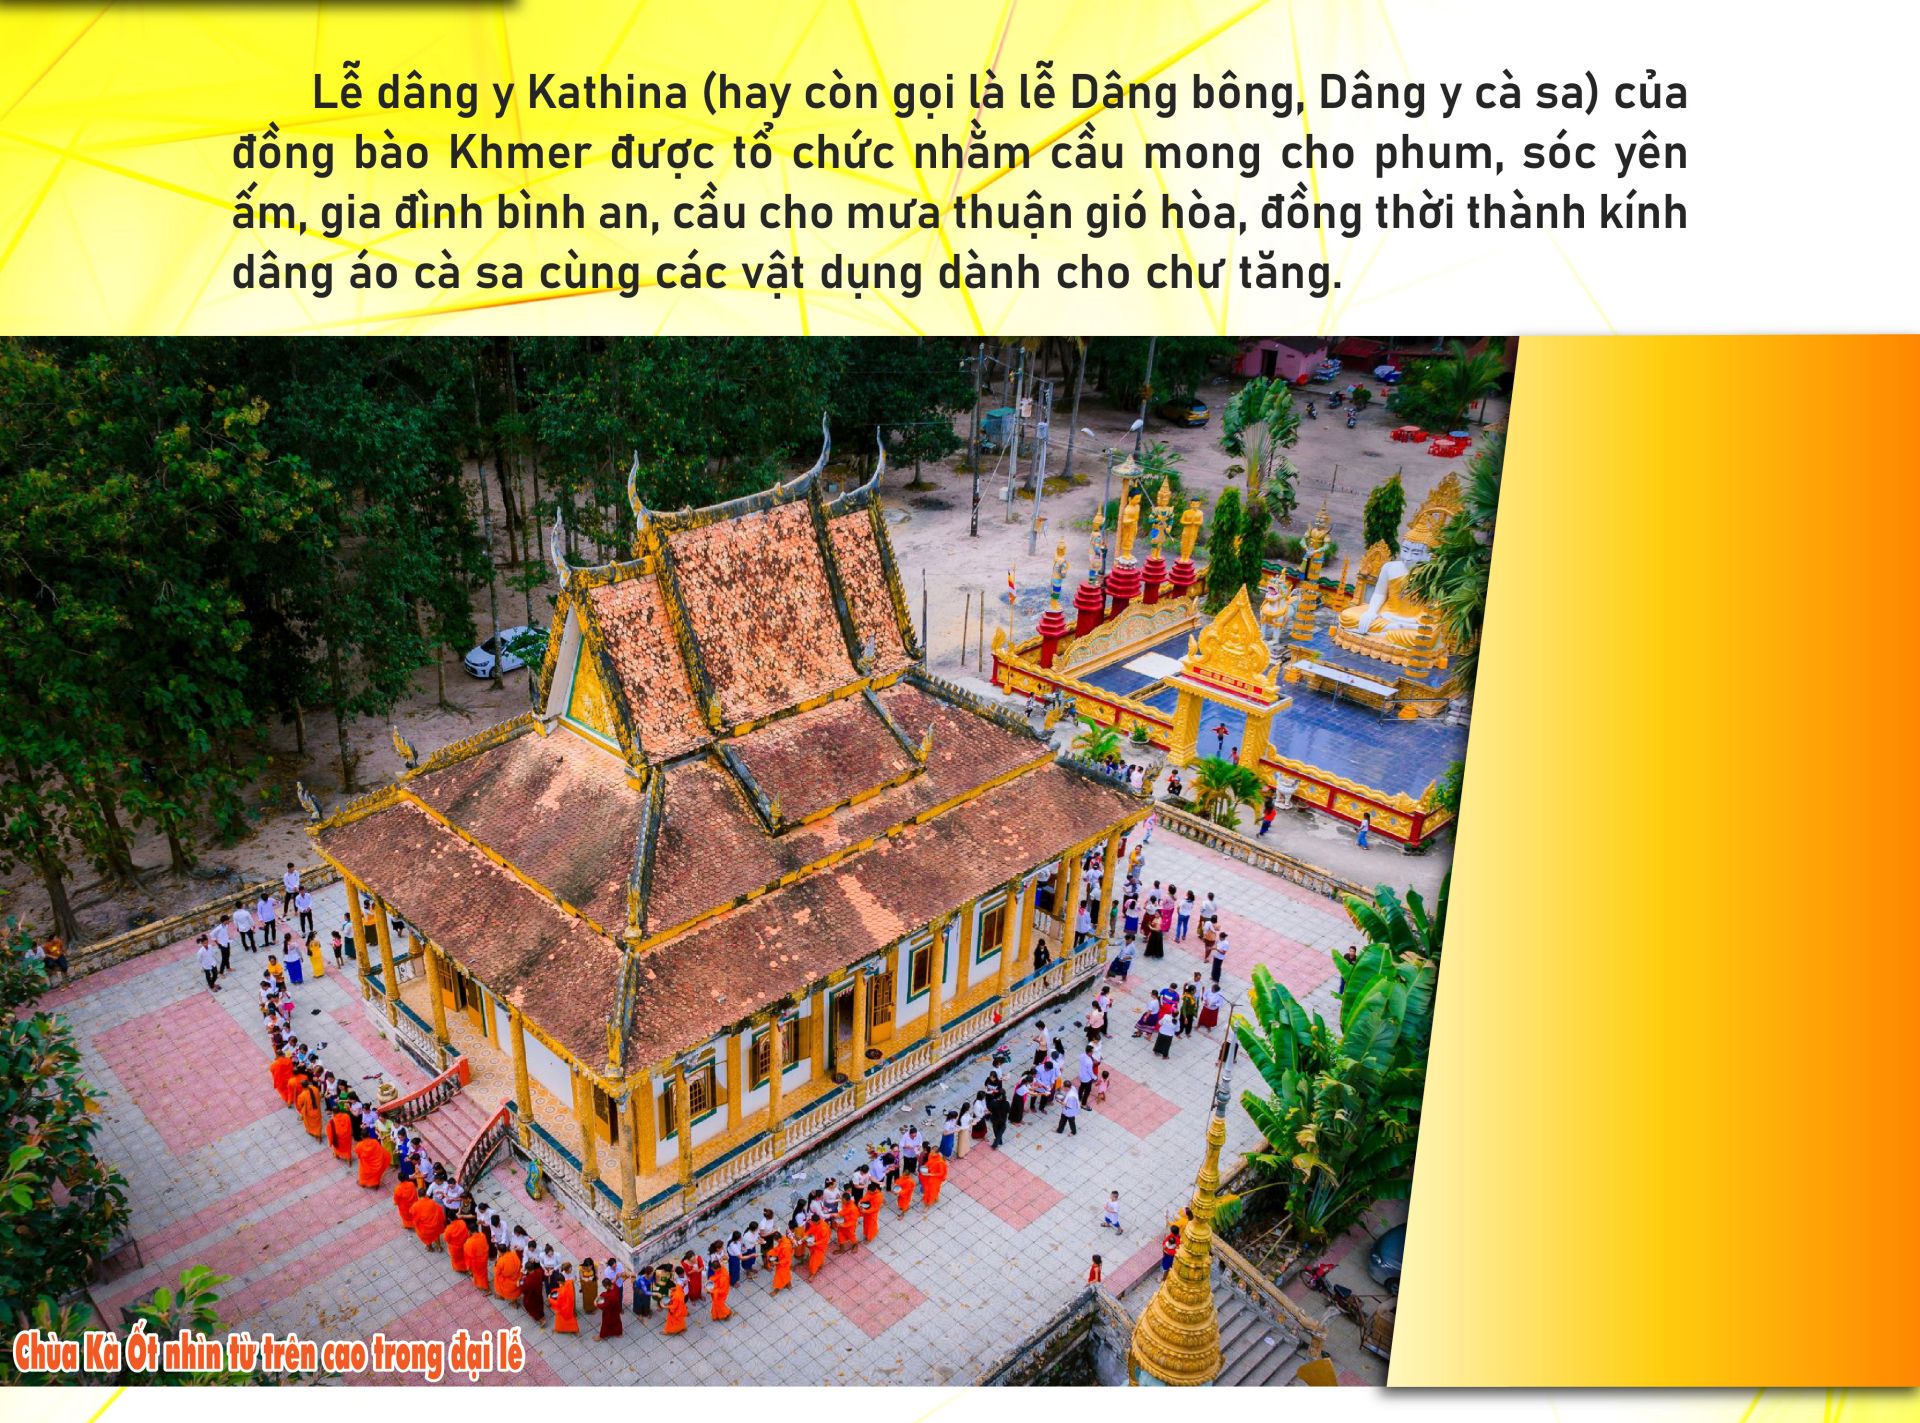 Sắc màu lễ Dâng y Kathina của bà con dân tộc Khmer